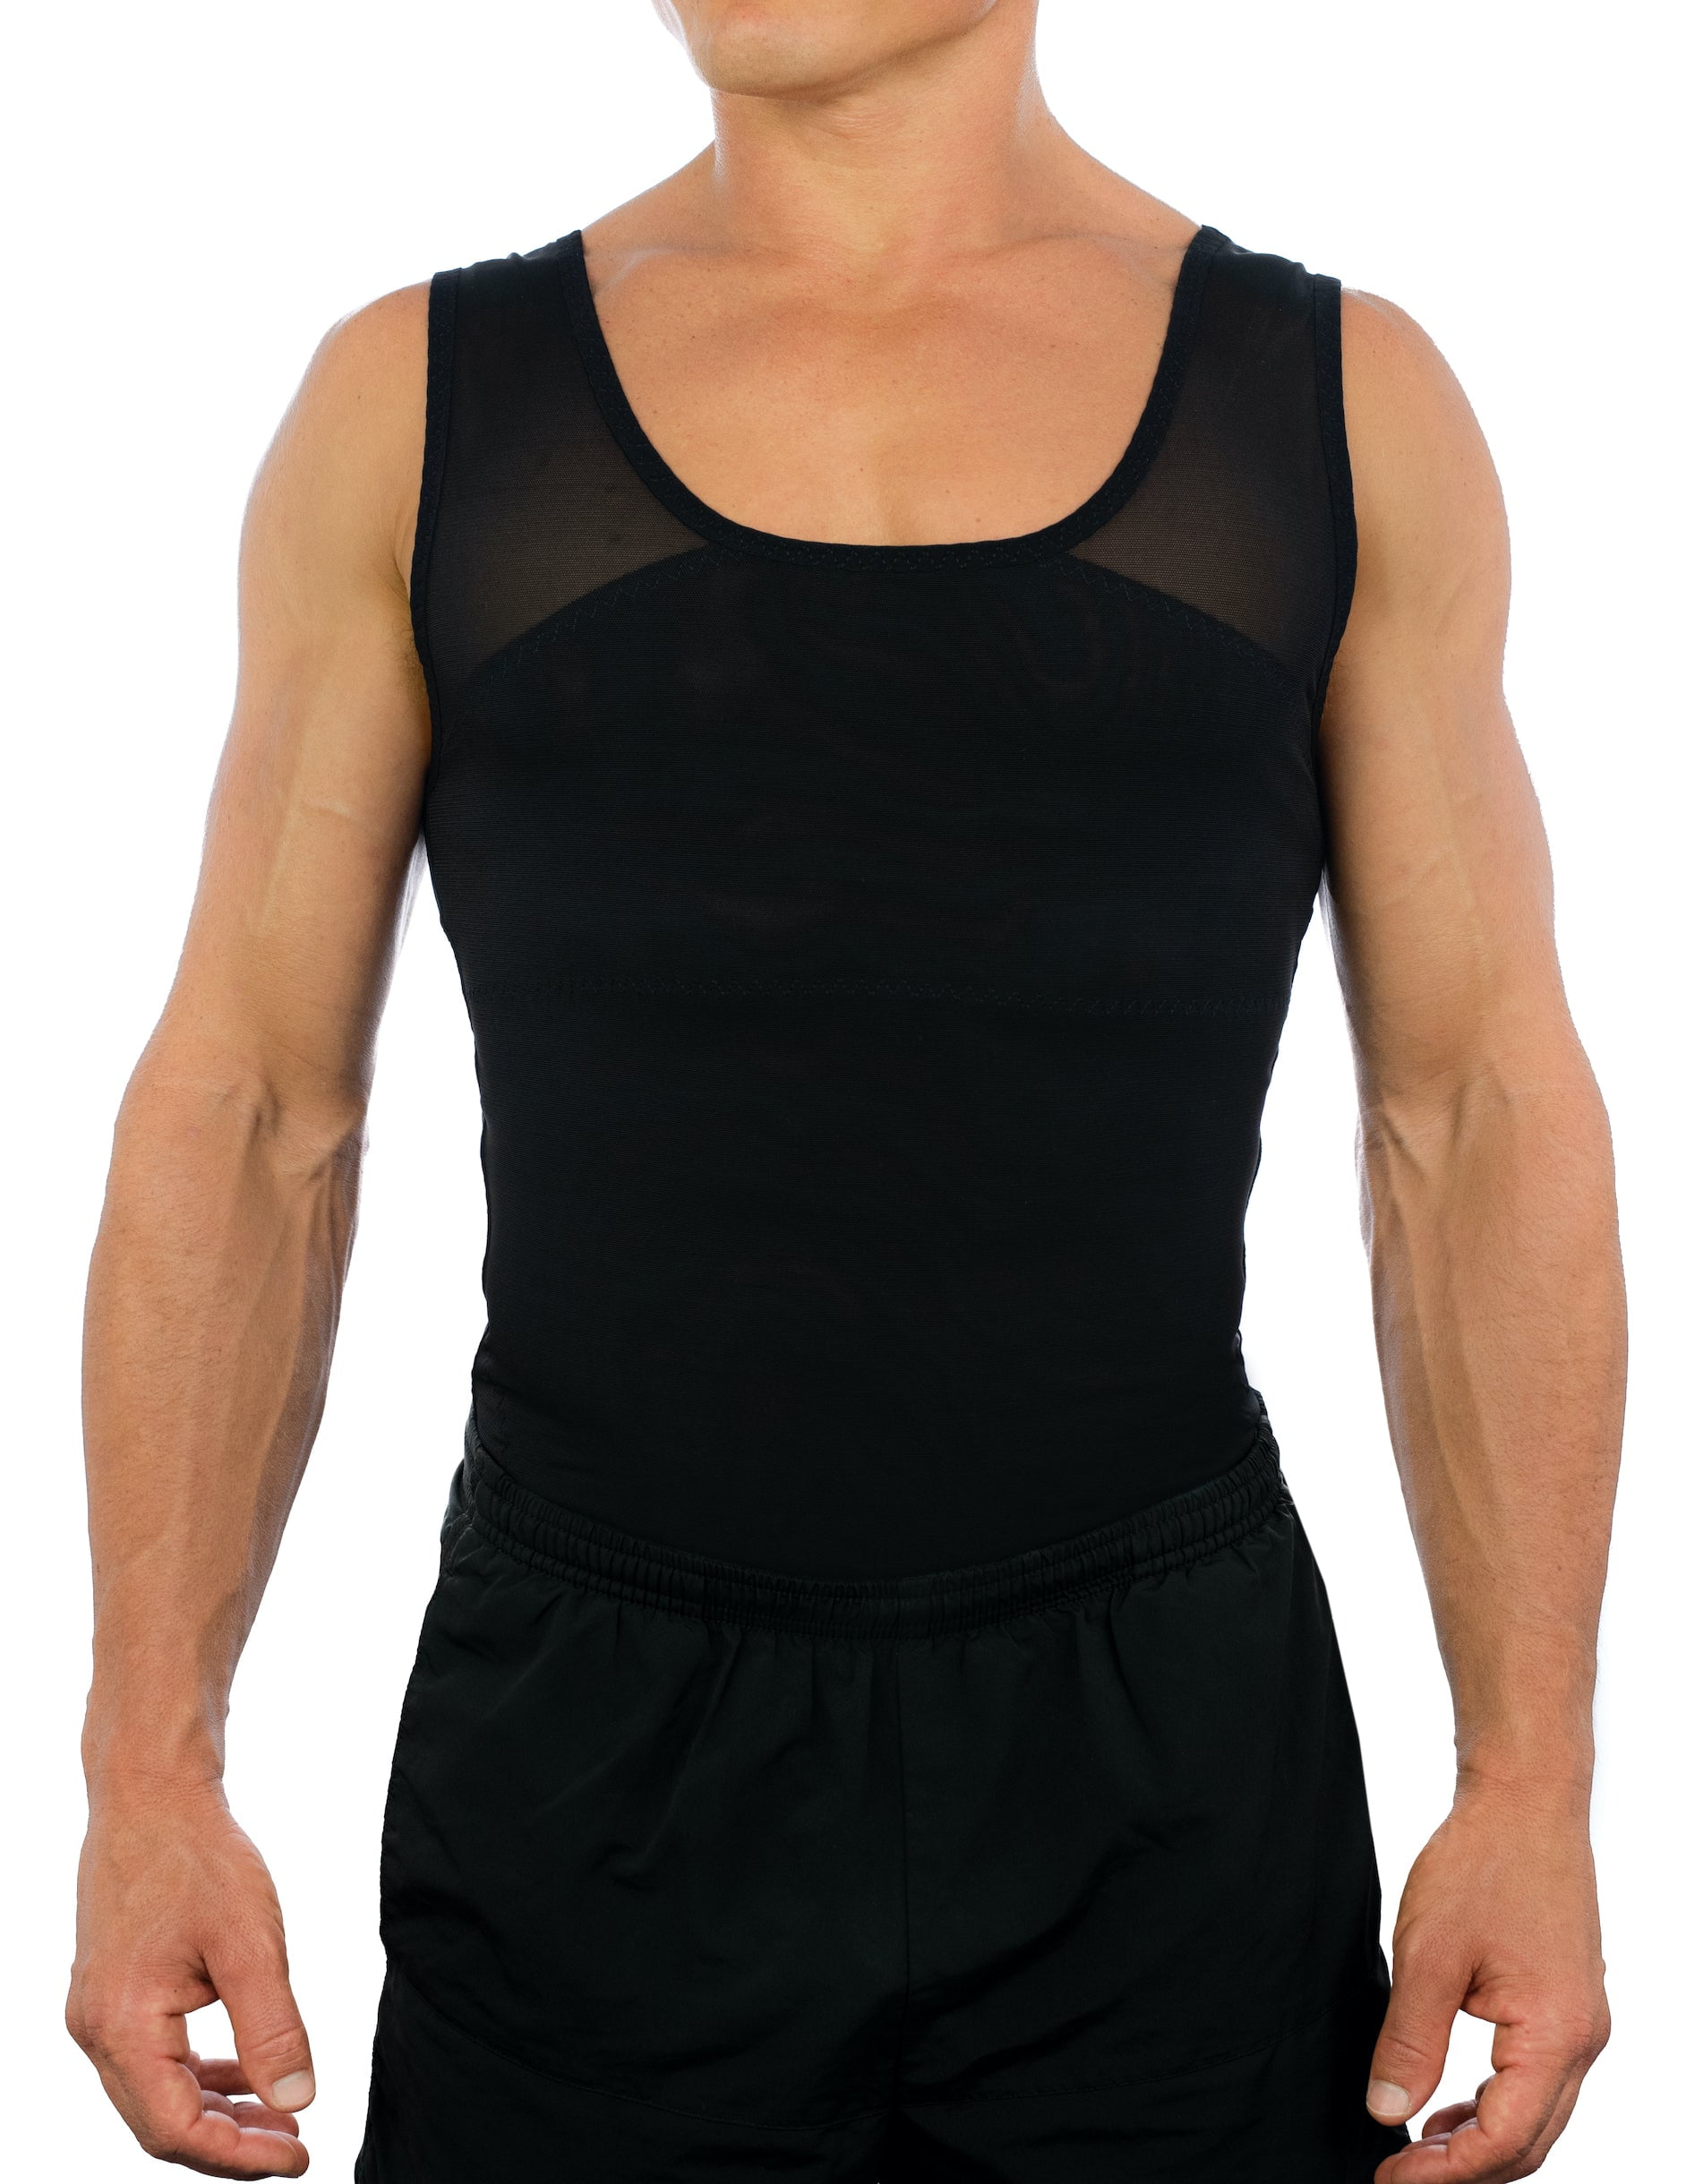 Max Compression Slimming Shapewear Tank Top Undershirts – Esteem